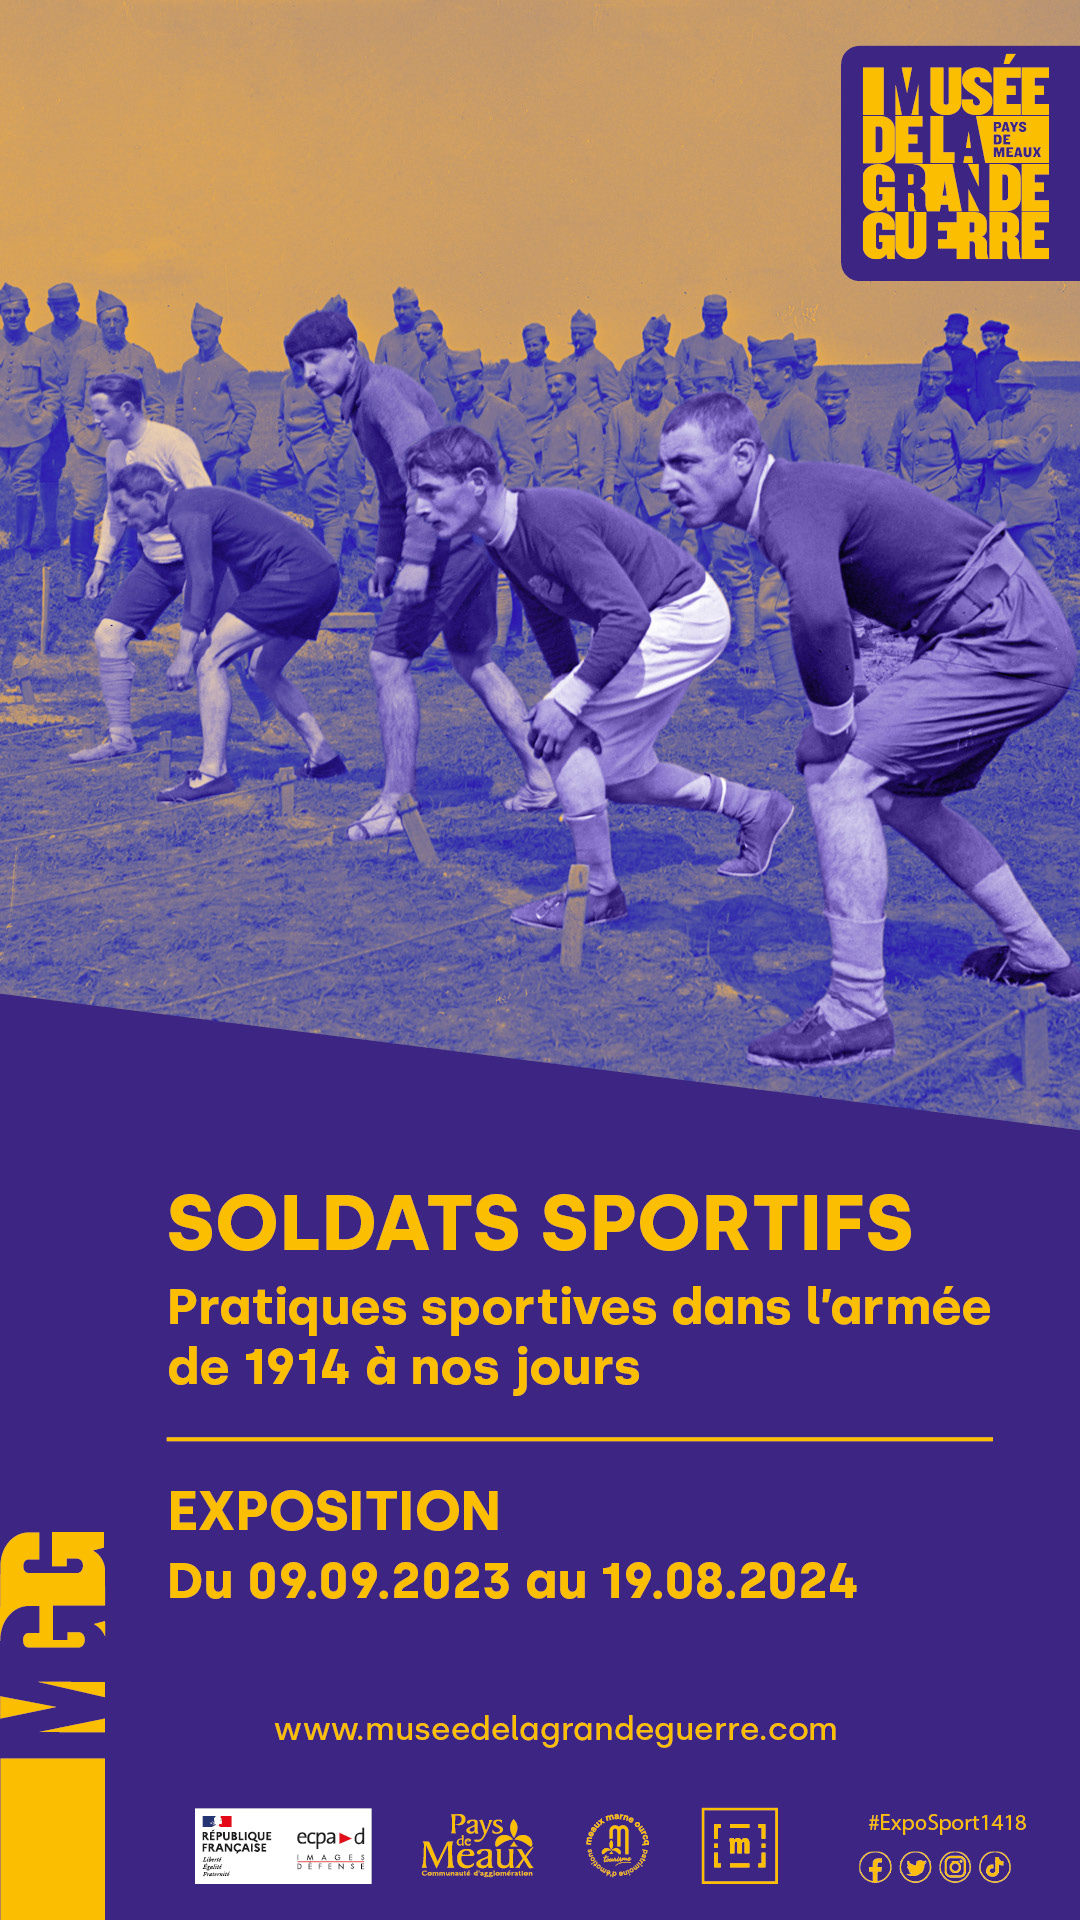 Soldats sportifs, pratiques sportives dans l’armée française de 1914 à nos jours